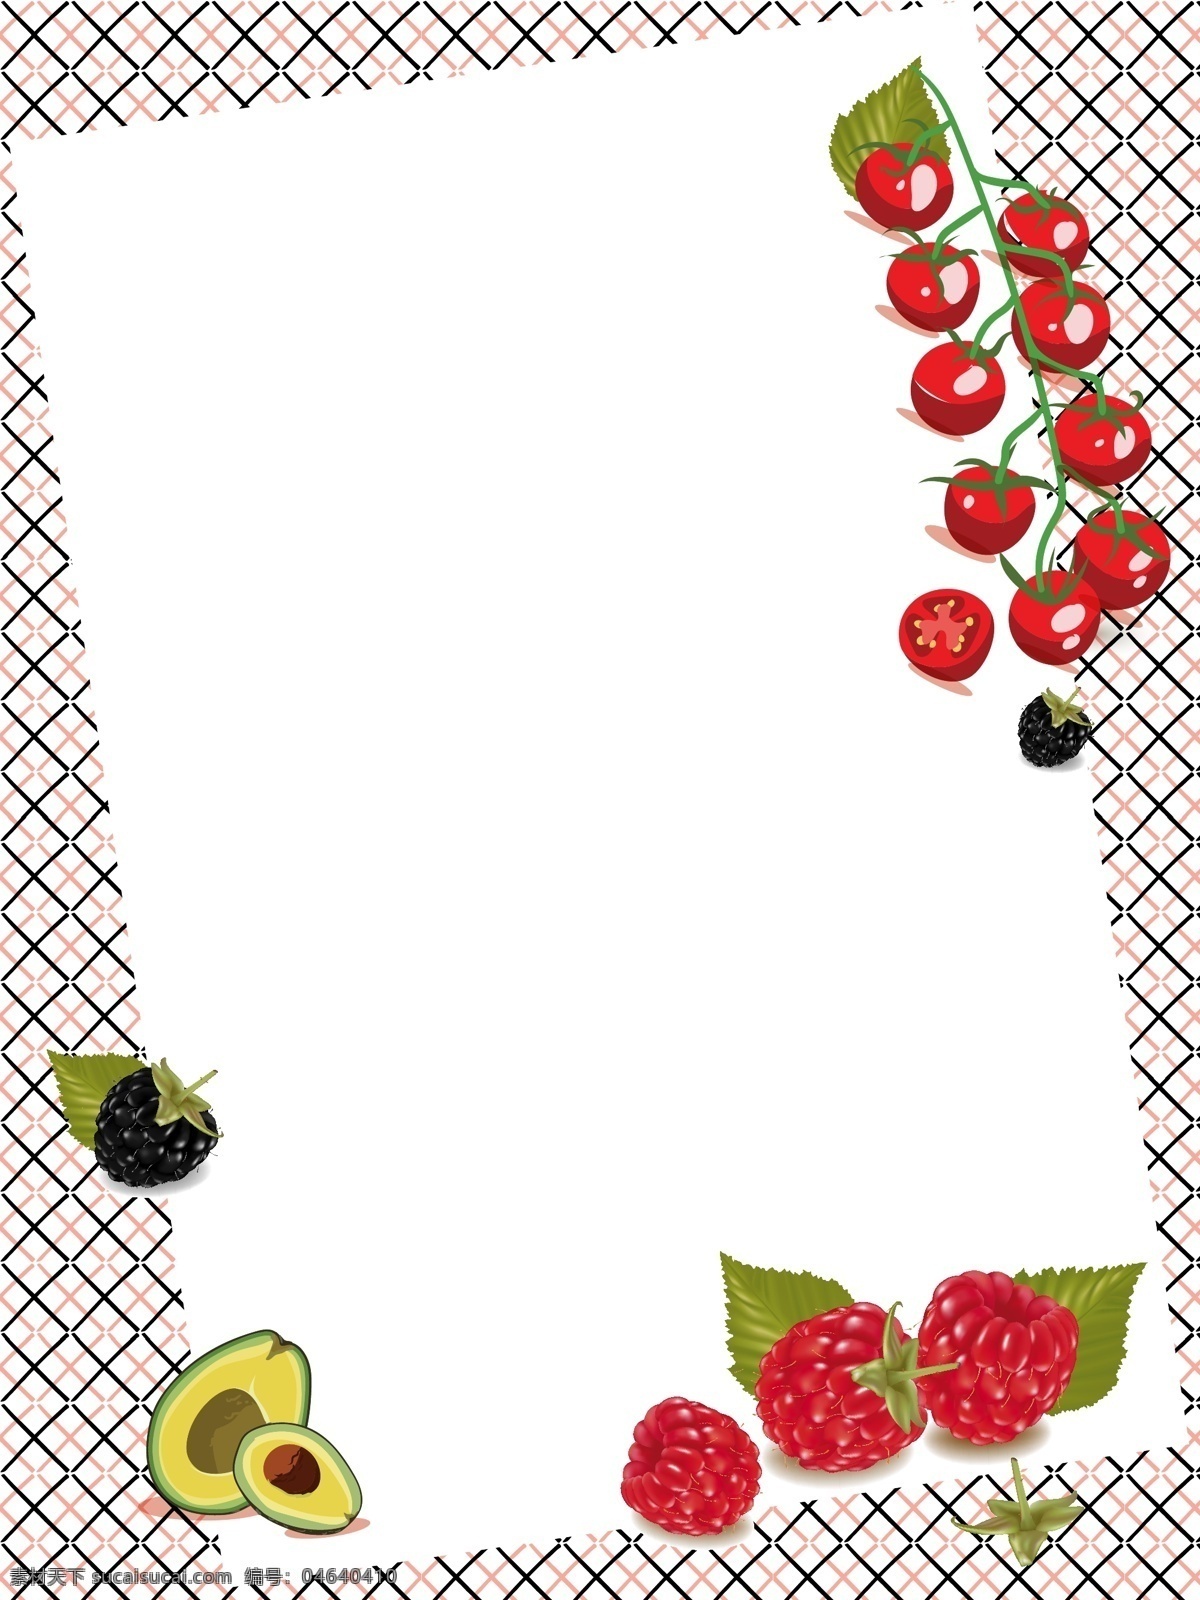 桌面 水果 背景 矢量图 桌布 格子 矢量背景 水果背景 西红柿 桑葚 野草莓 牛油果 餐布 水果矢量图 平面背景